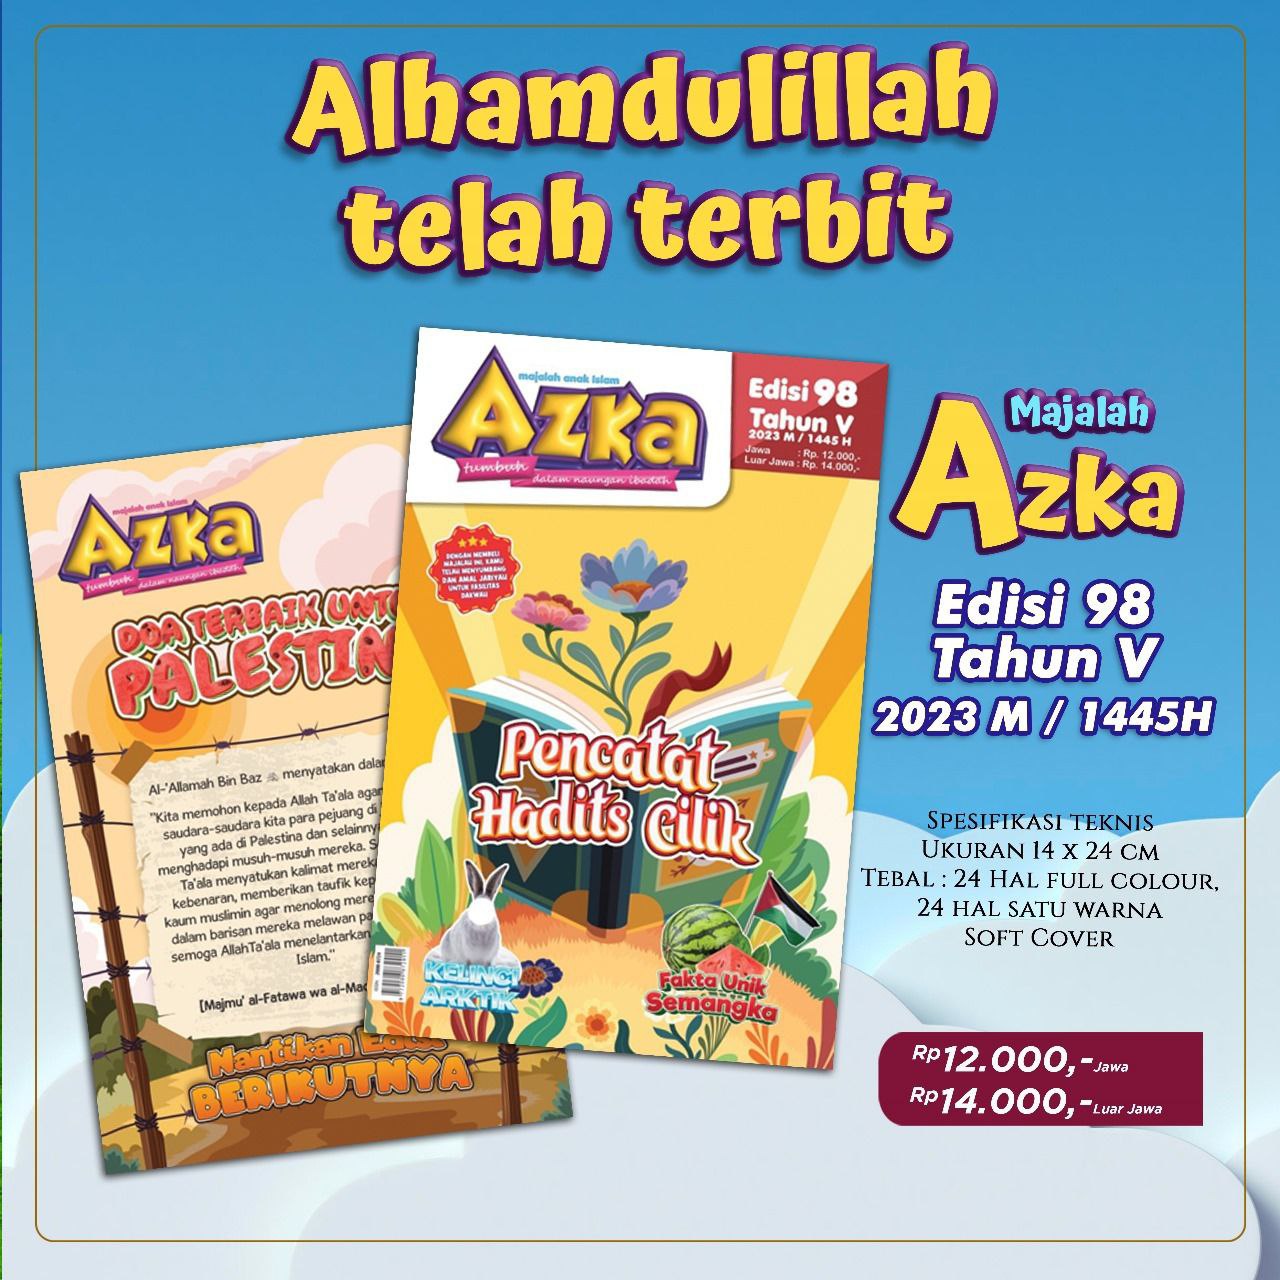 majalah azka edisi 98